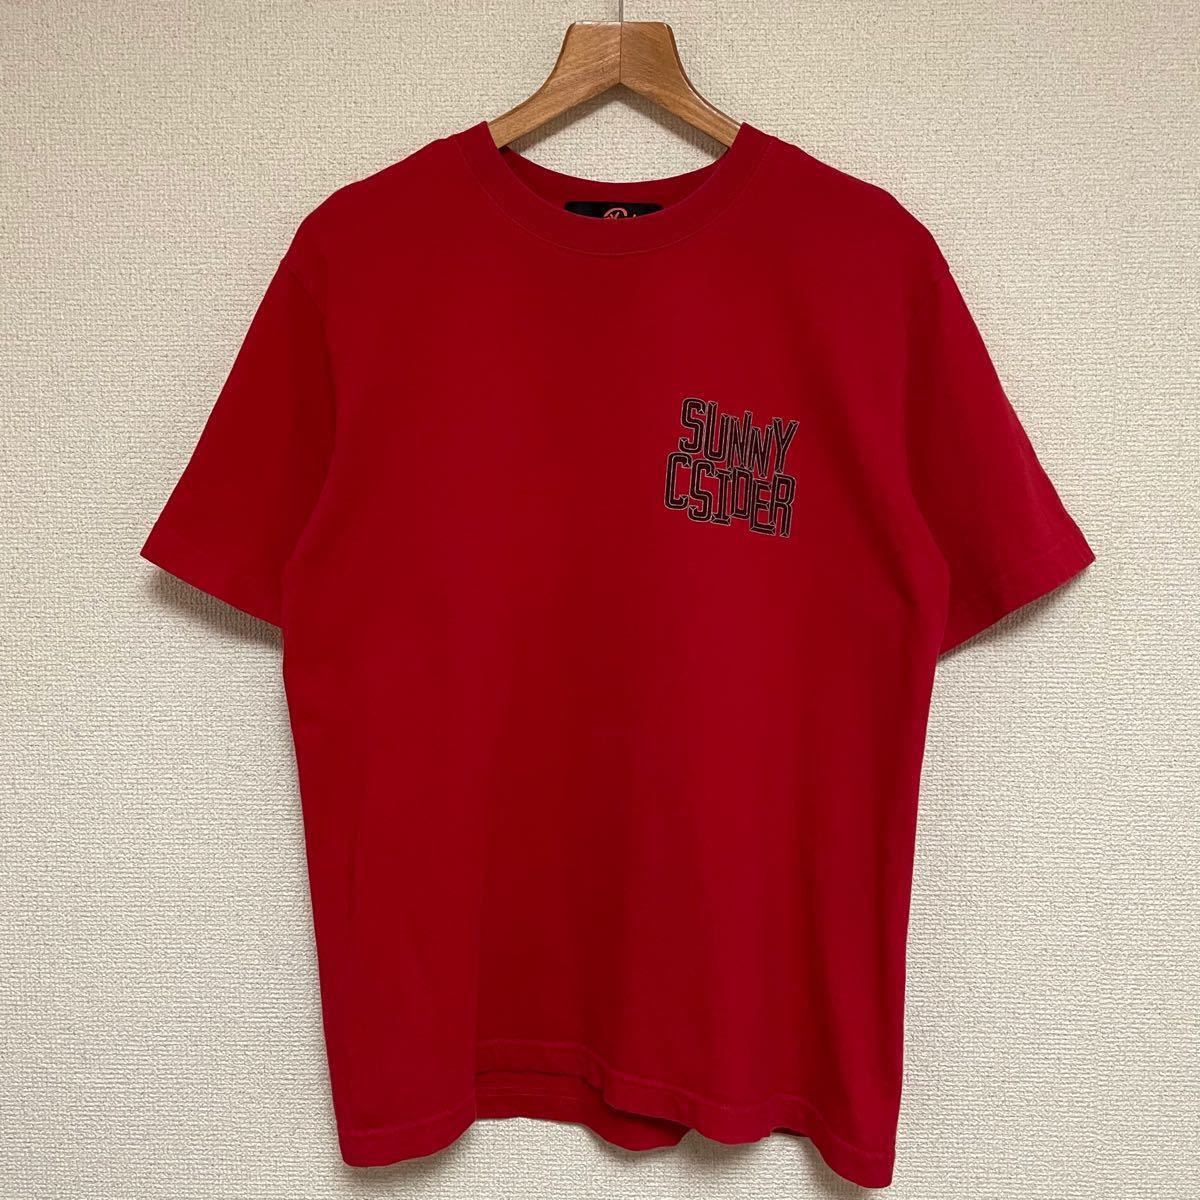 2010円 最上の品質な HIDE AND SEEK SUNNY C SIDER ロンt tシャツ m